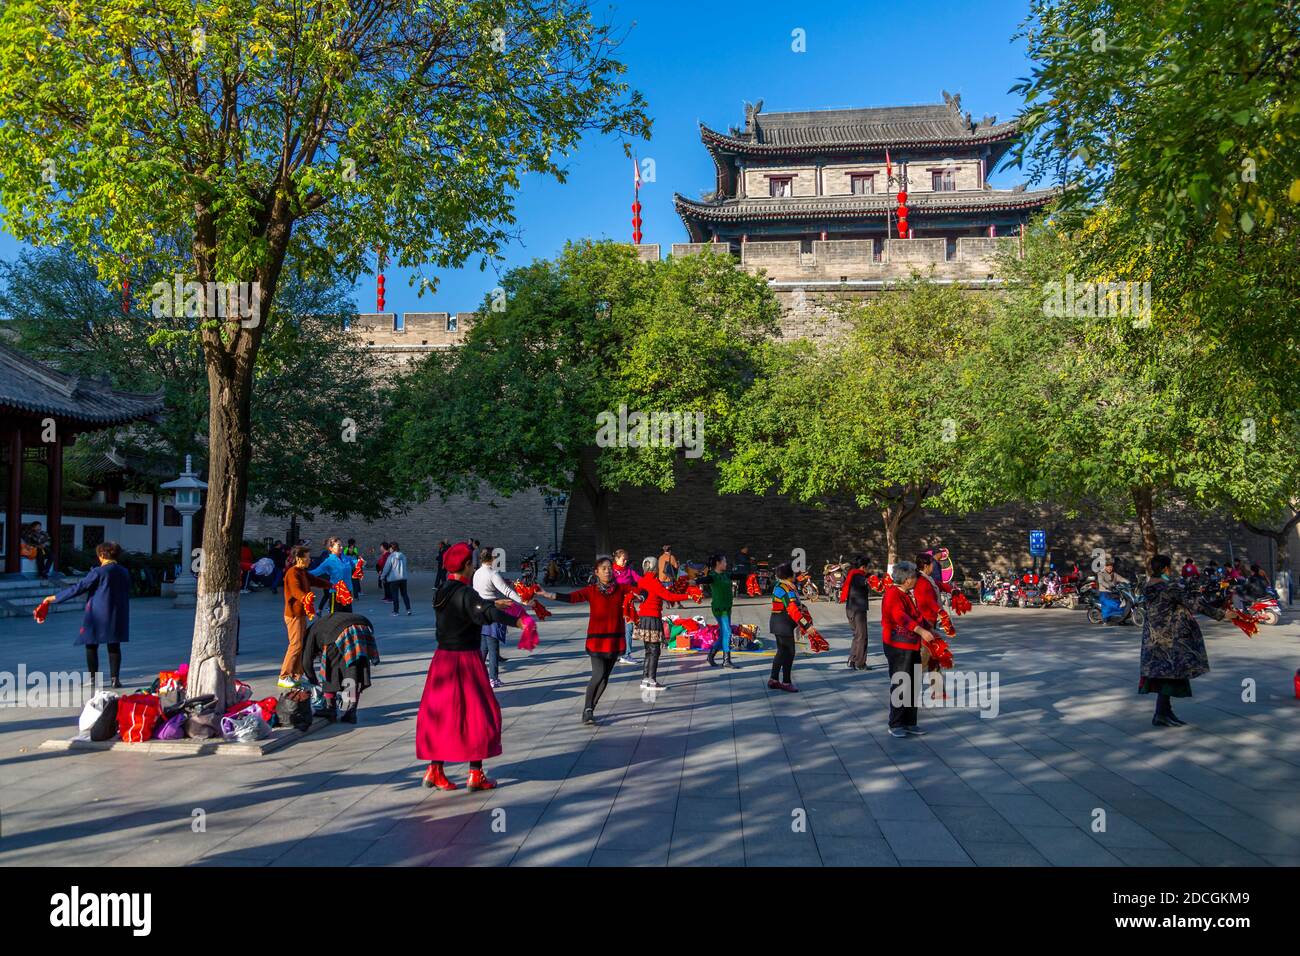 Les habitants de Tai chi près du mur de la ville de Xi'an, de la province de Shaanxi, de la République Populaire de Chine, d'Asie Banque D'Images